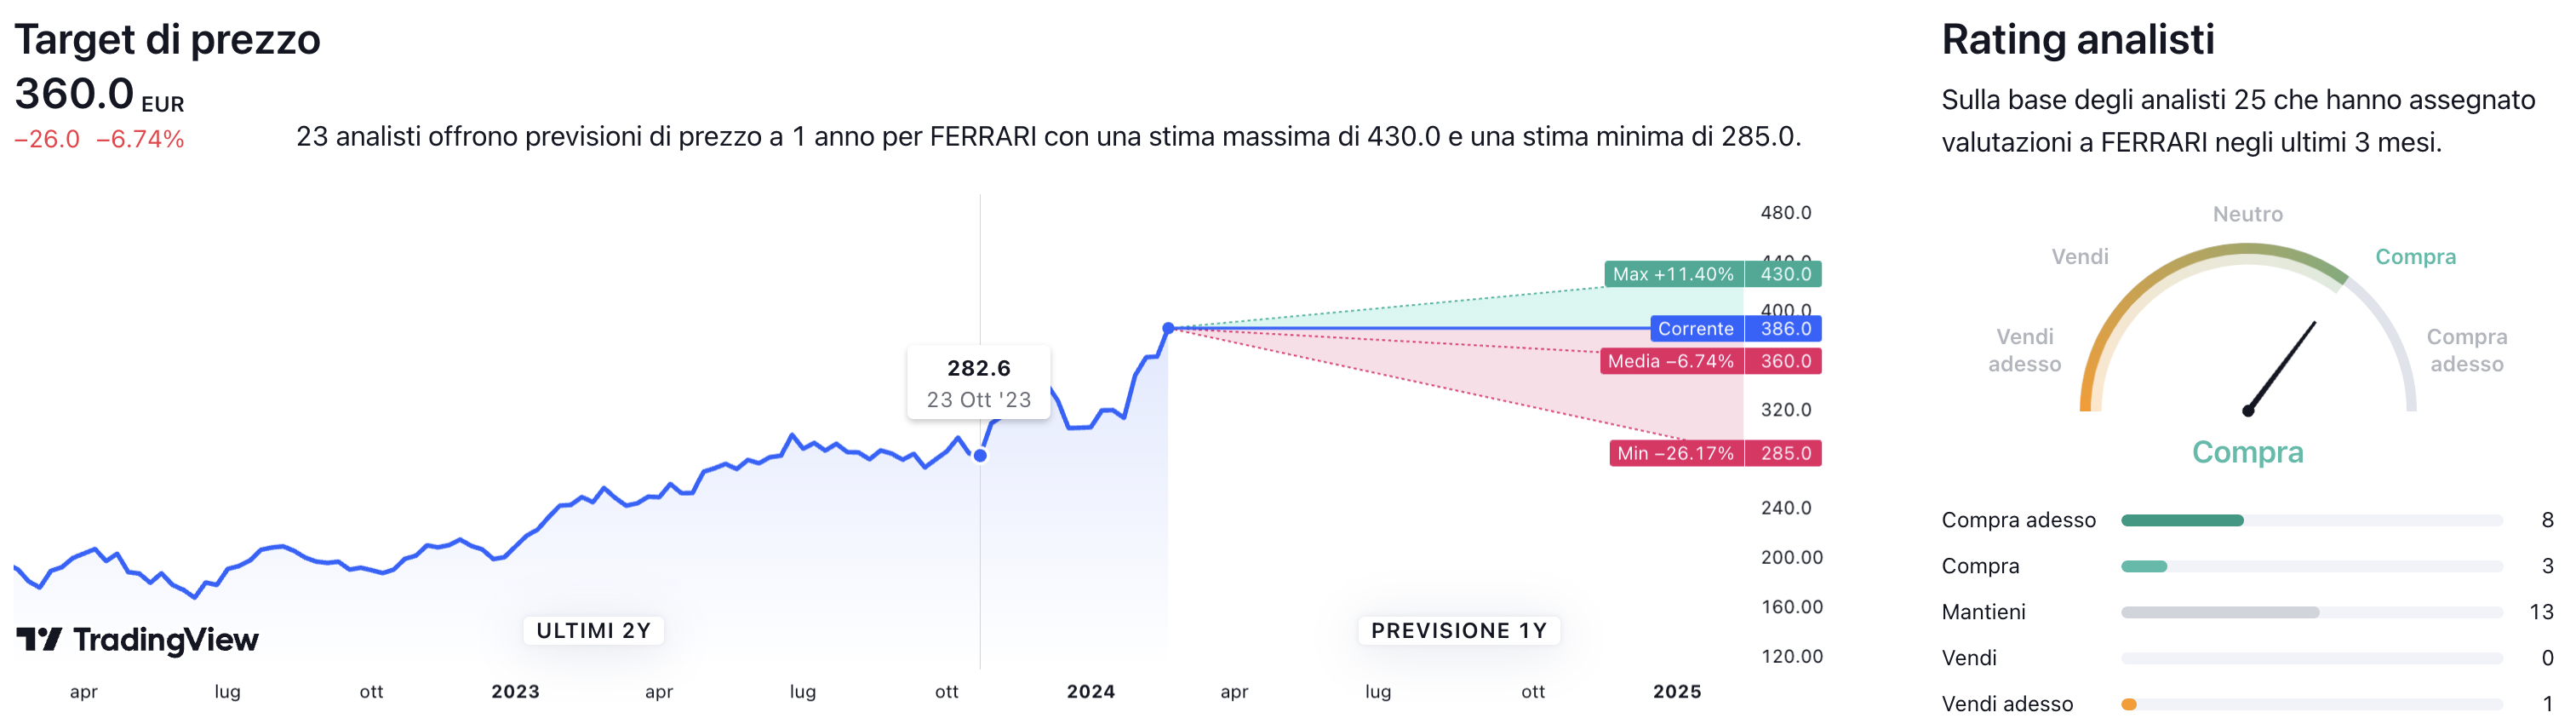 Target di prezzo a un anno e raccomandazioni degli analisti per il titolo Ferrari